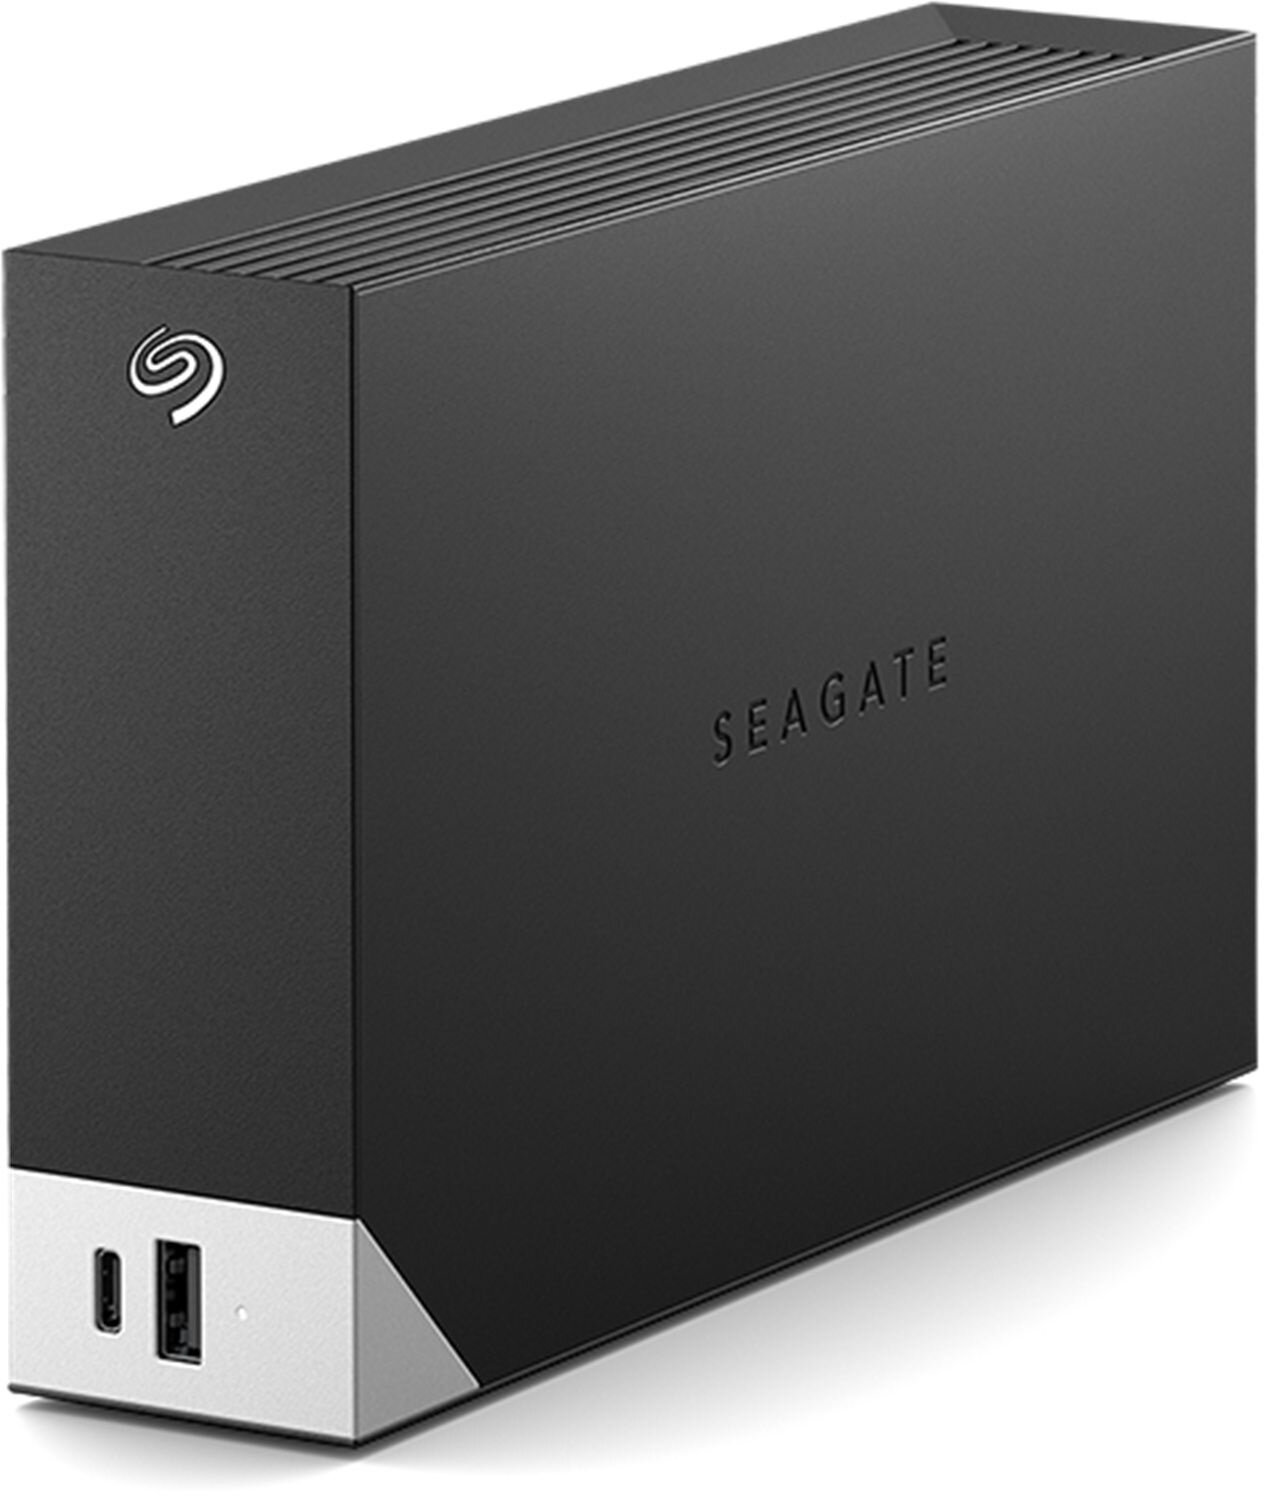 Жесткий диск SEAGATE USB 3.0 14Tb 3.5" черный (STLC14000400)